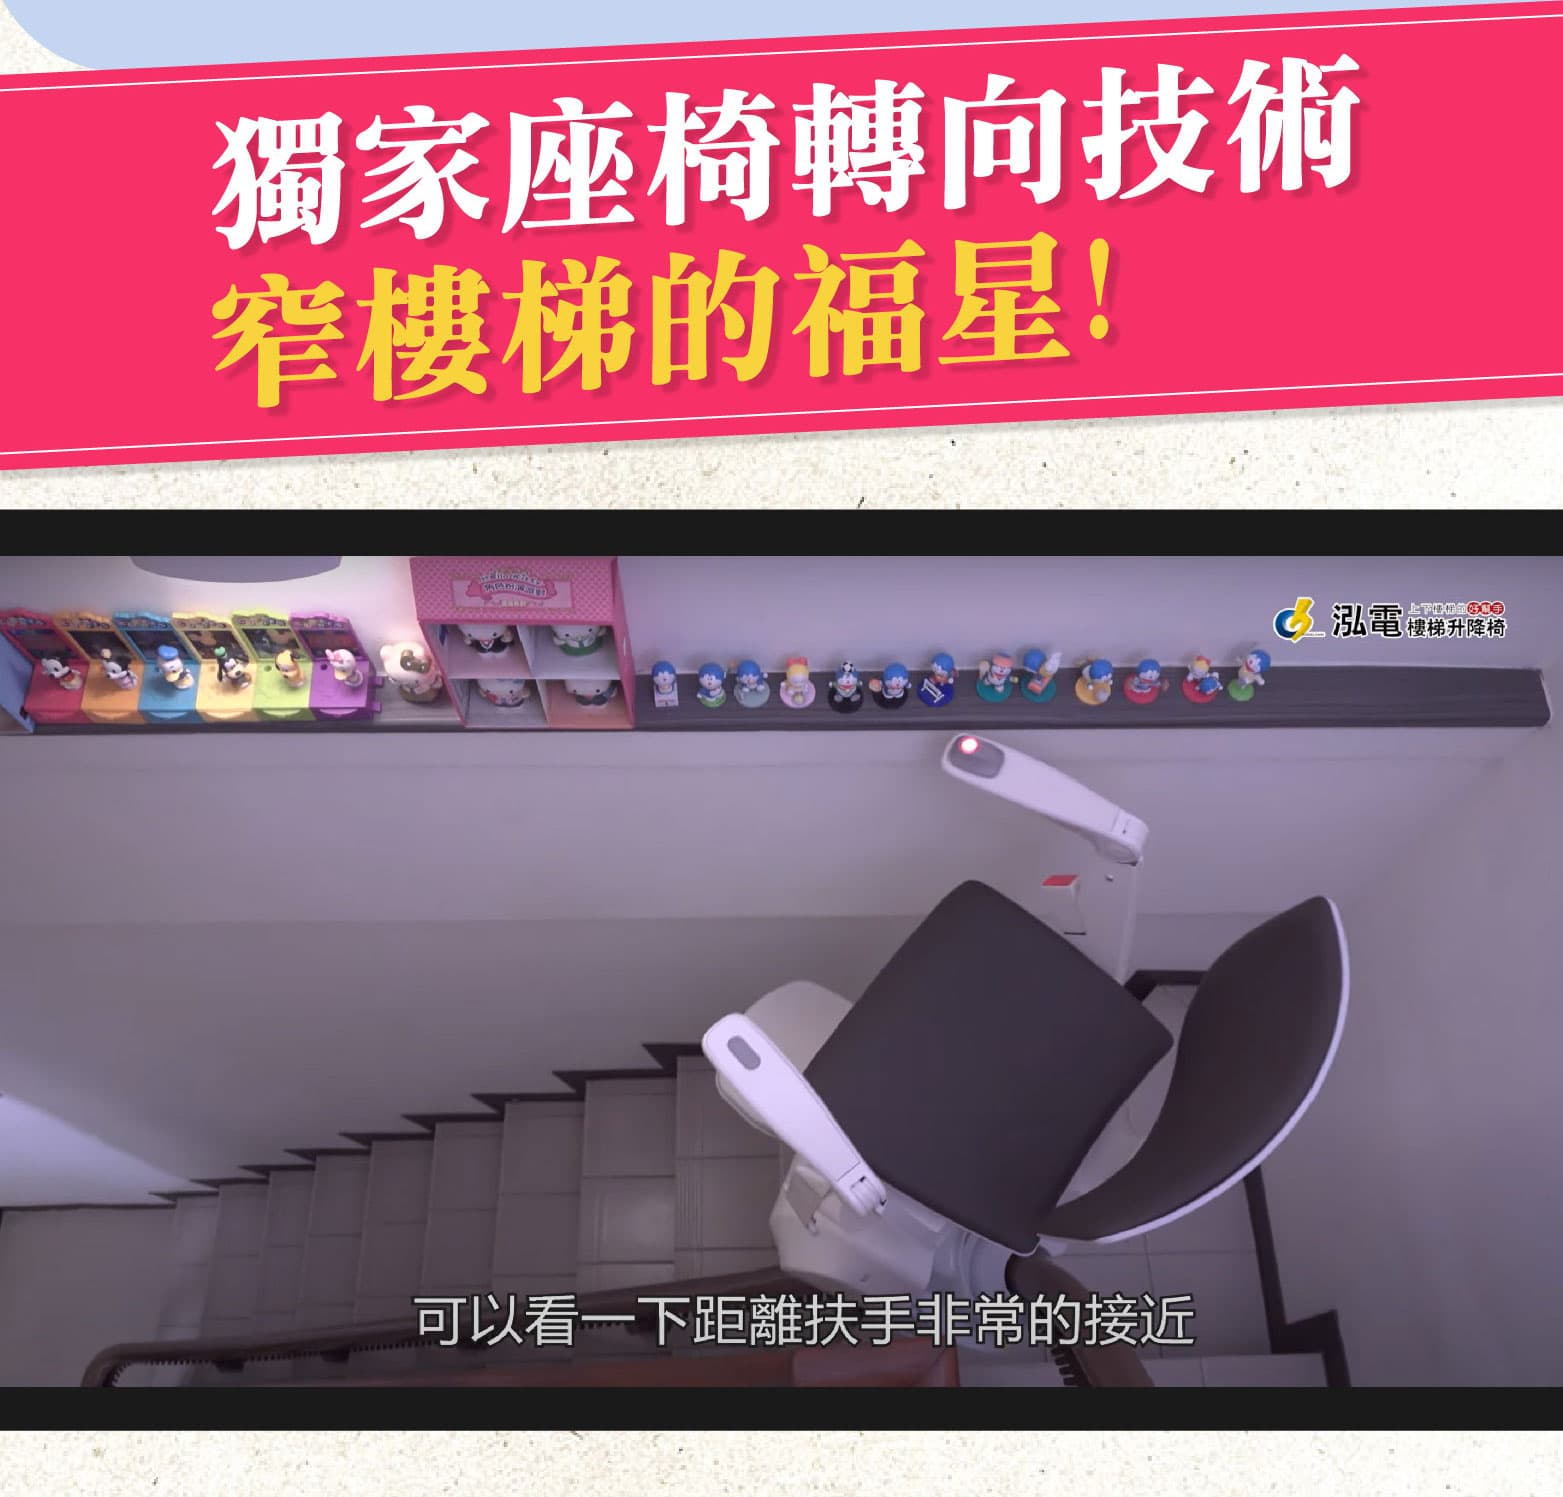 獨家座椅轉向技術窄樓梯的救星